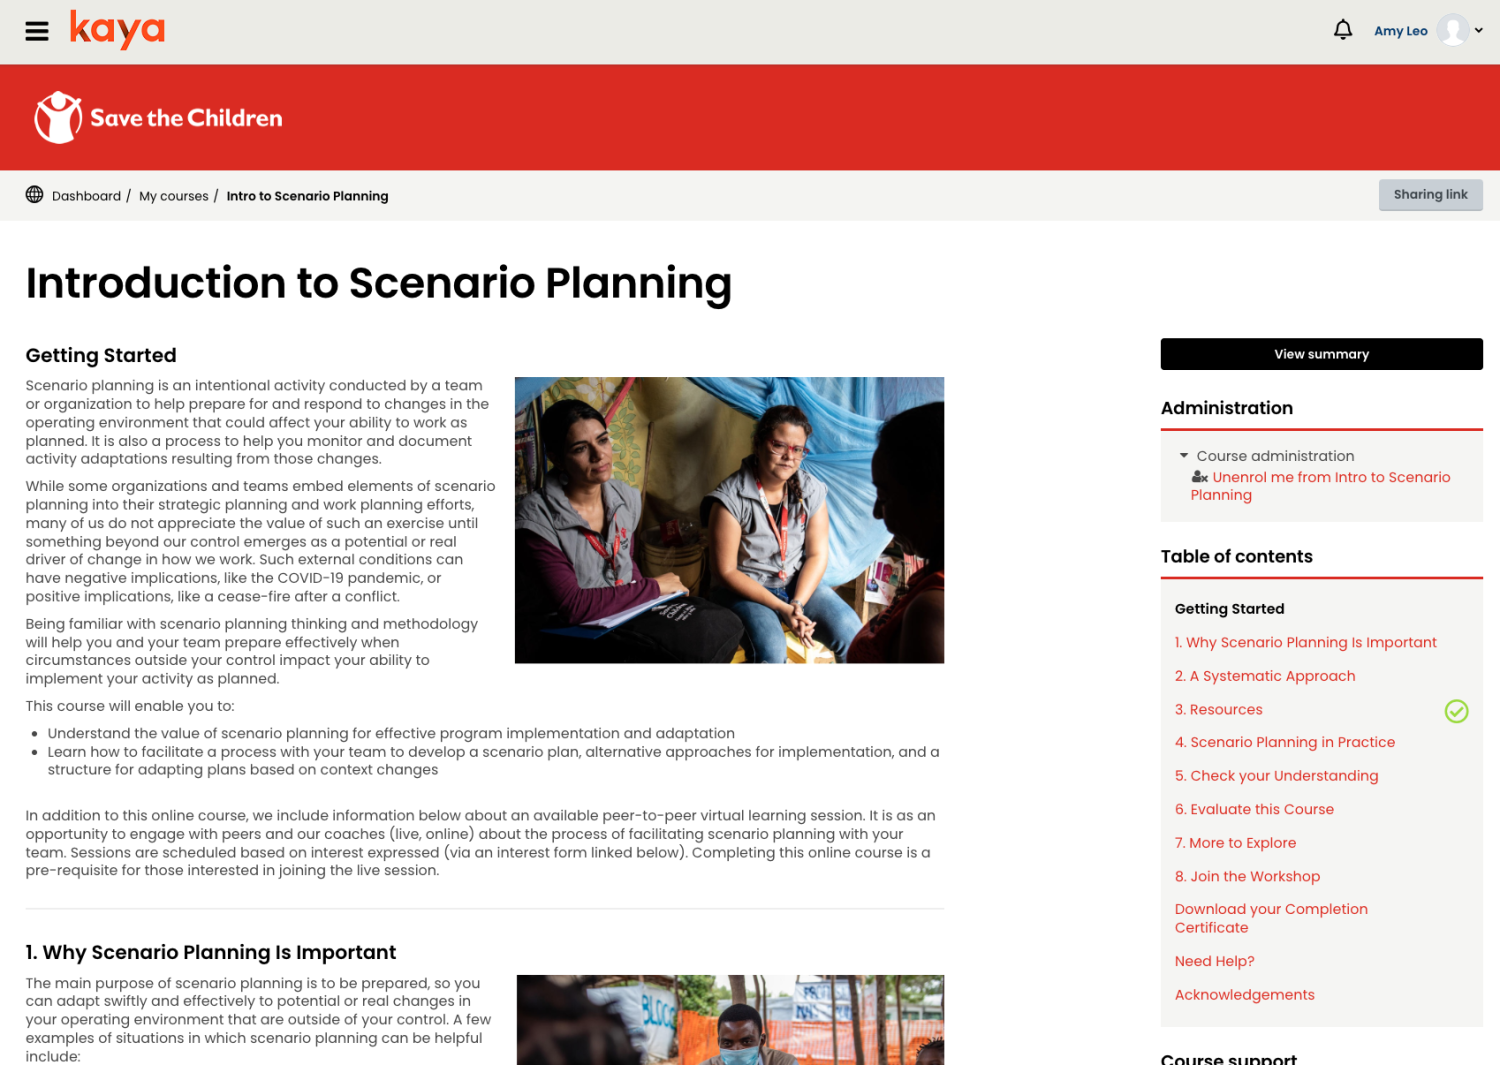 screenshot from scenario planning course